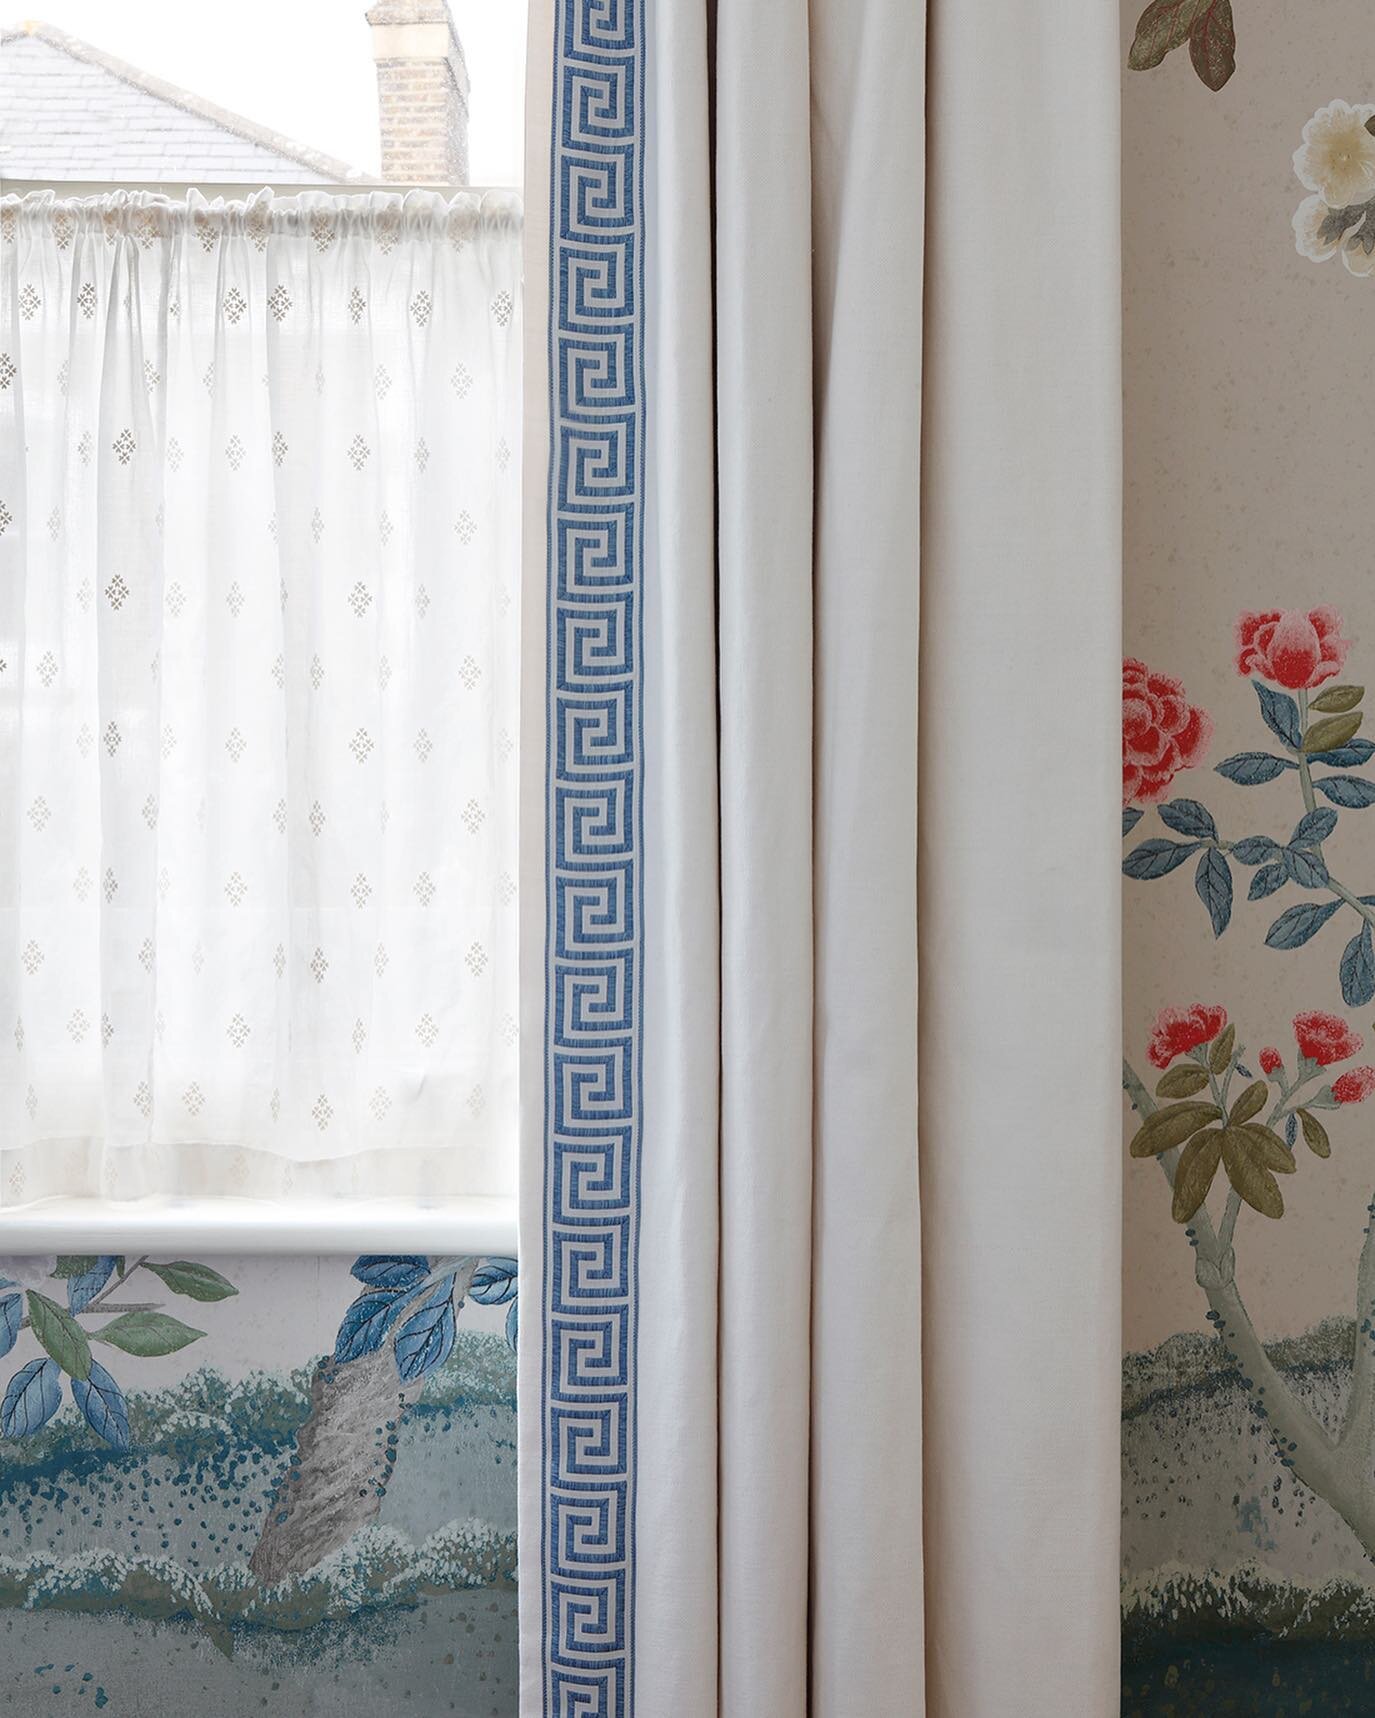 Curtain details.

#pringleandpringle #curtains #curtaindesign #passmenterie #cafecurtains #interiordesign #interiorinspo #wallpaper